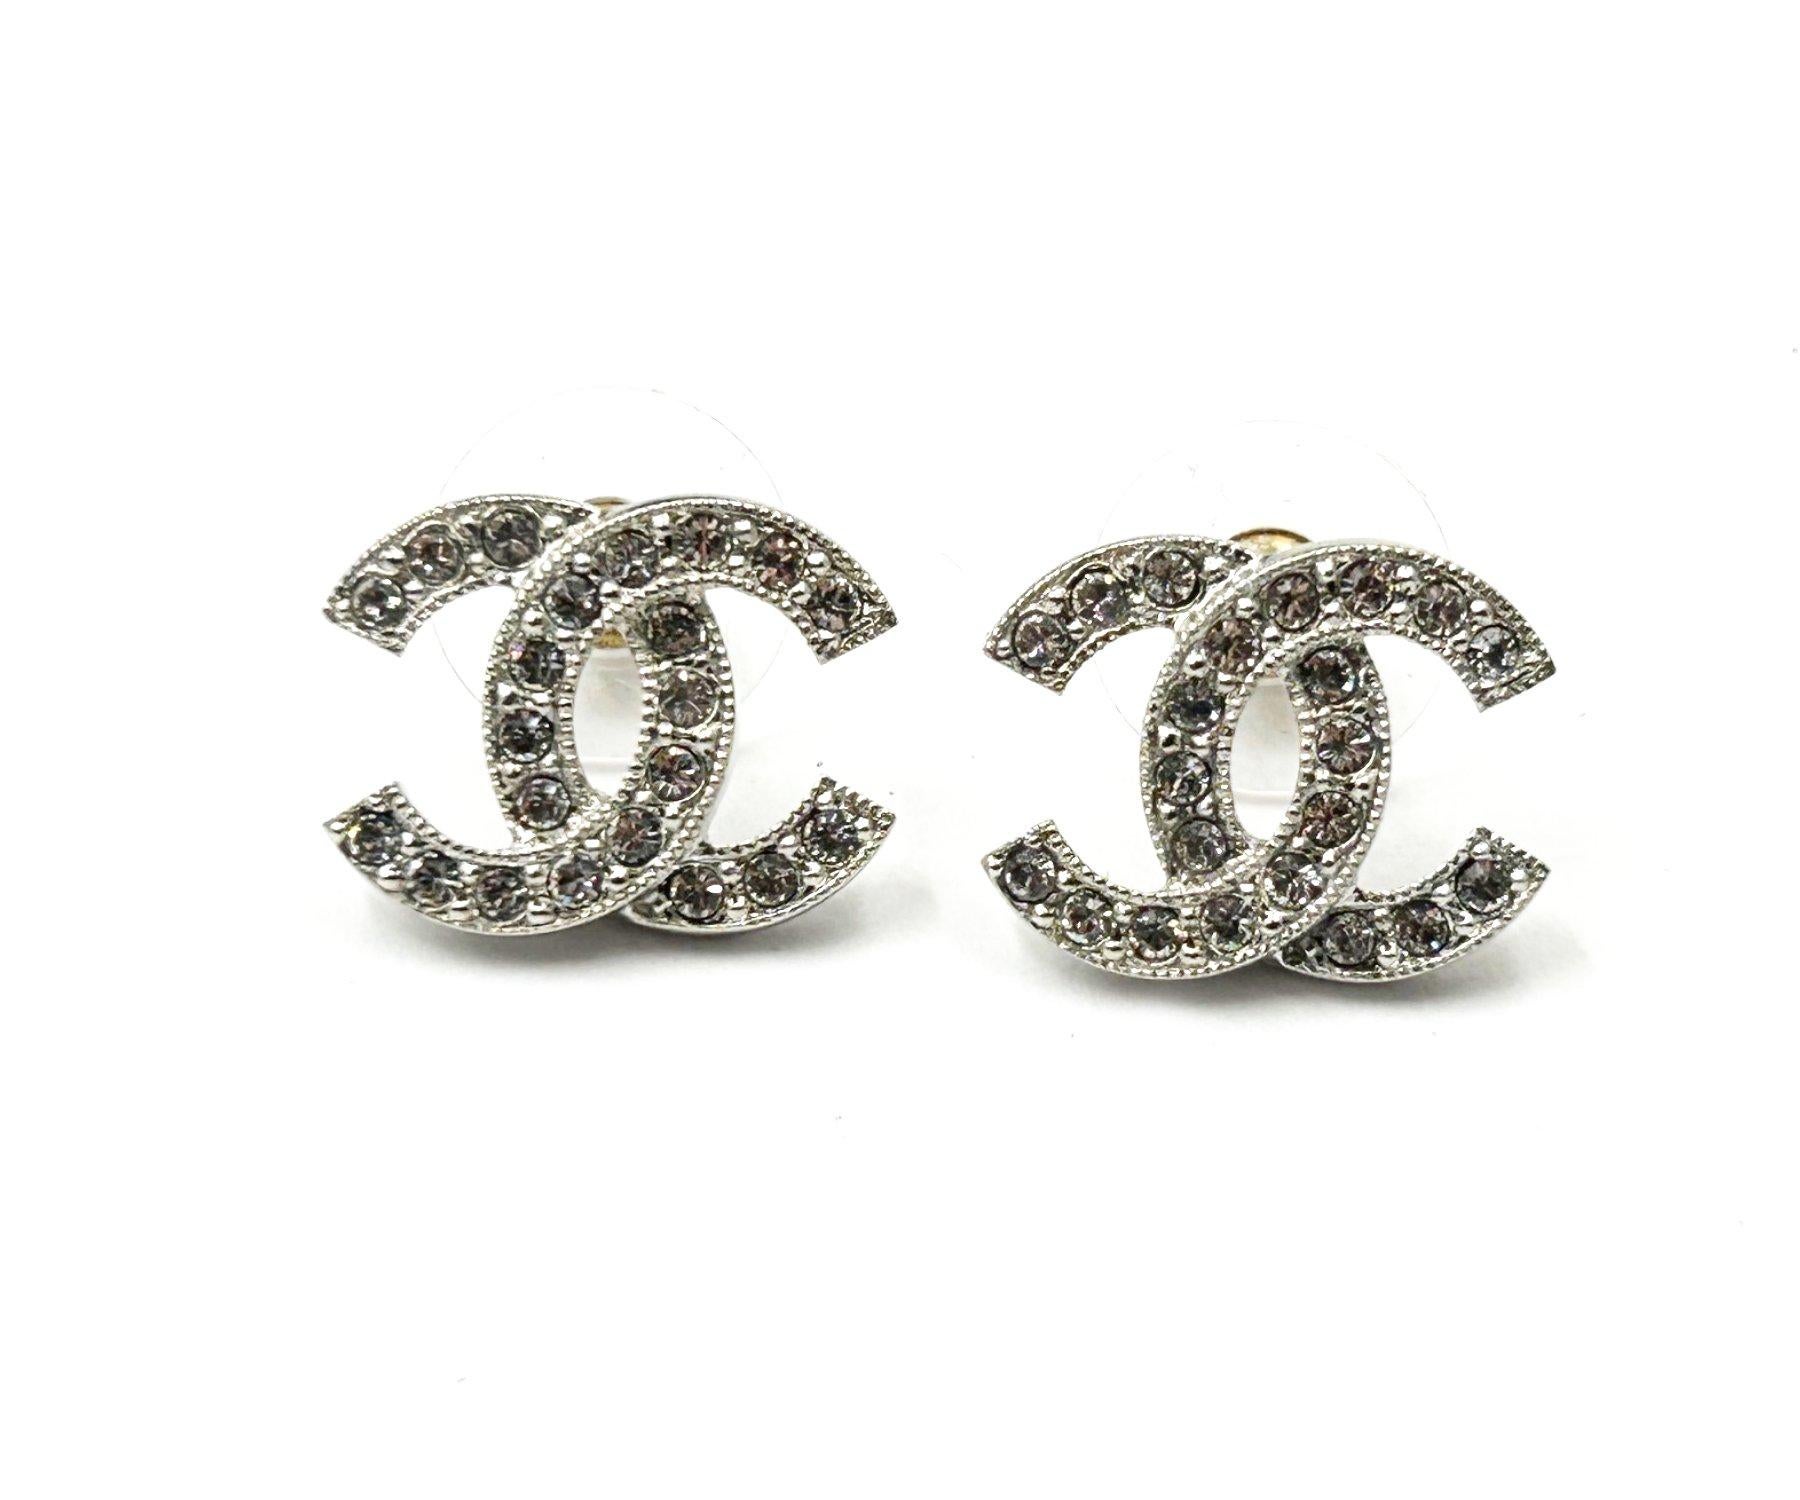 Chanel Classic Iconic Silber CC Crystal Reissued Medium Piercing Ohrringe

*Markiert 22
*Hergestellt in Frankreich
*Mit Originalverpackung, Tasche und Booklet

-Es ist ungefähr 0,55